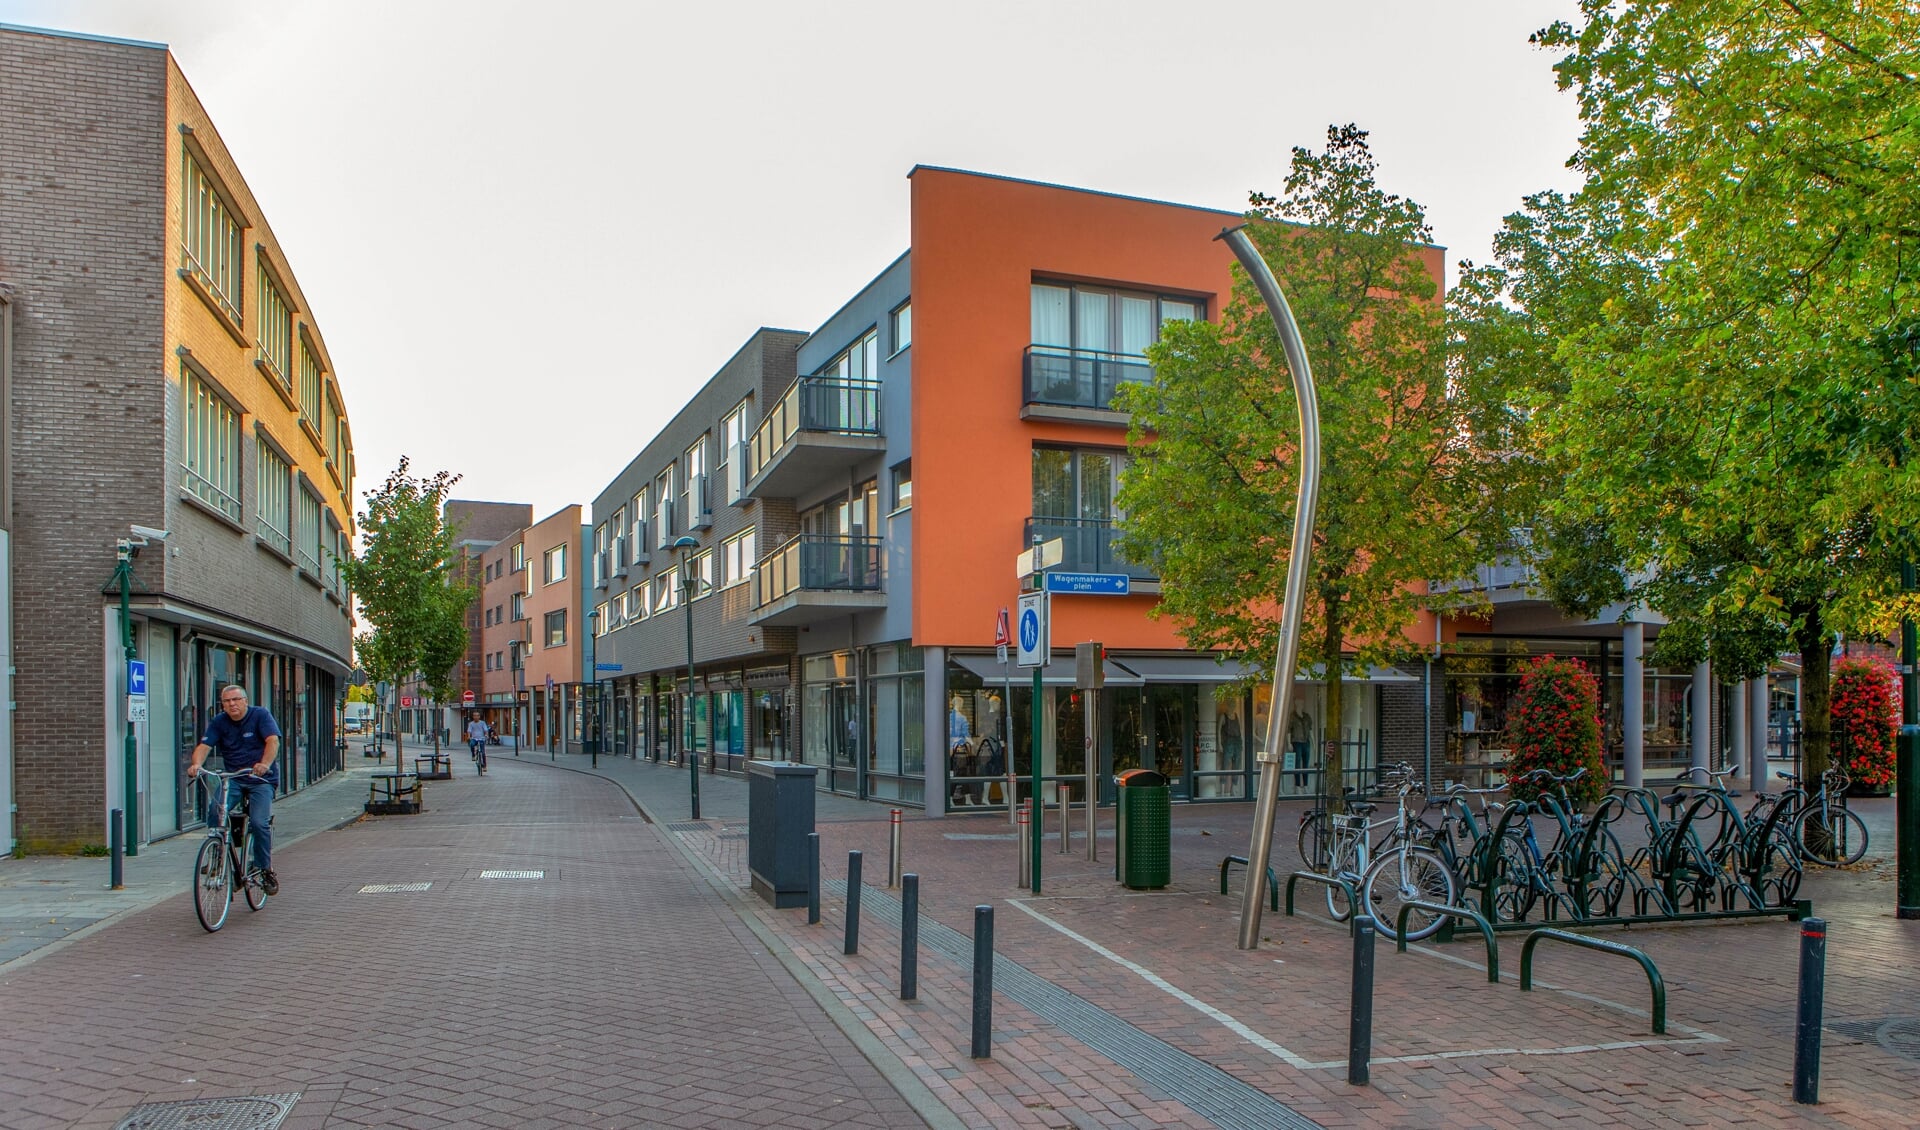 Gemeente en ondernemers hebben een oplossing gevonden voor het fietsparkeren in de straat.